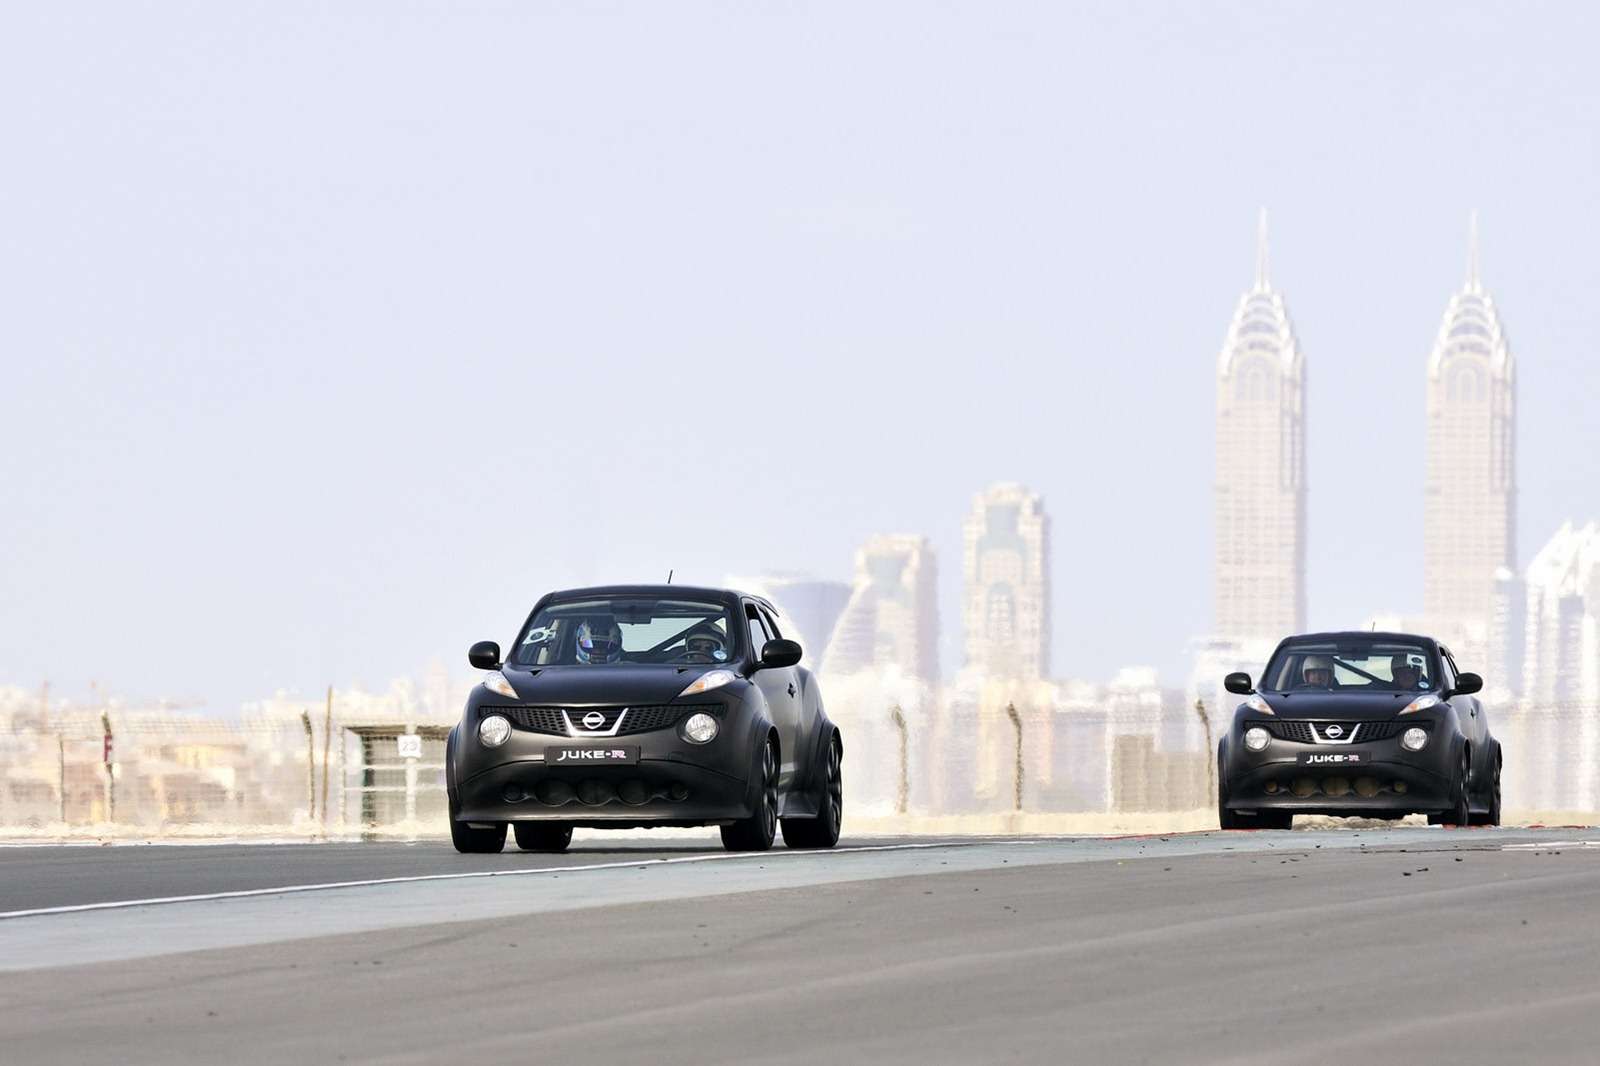 Nissan Juke-R daje wycisk fot styczen 2012